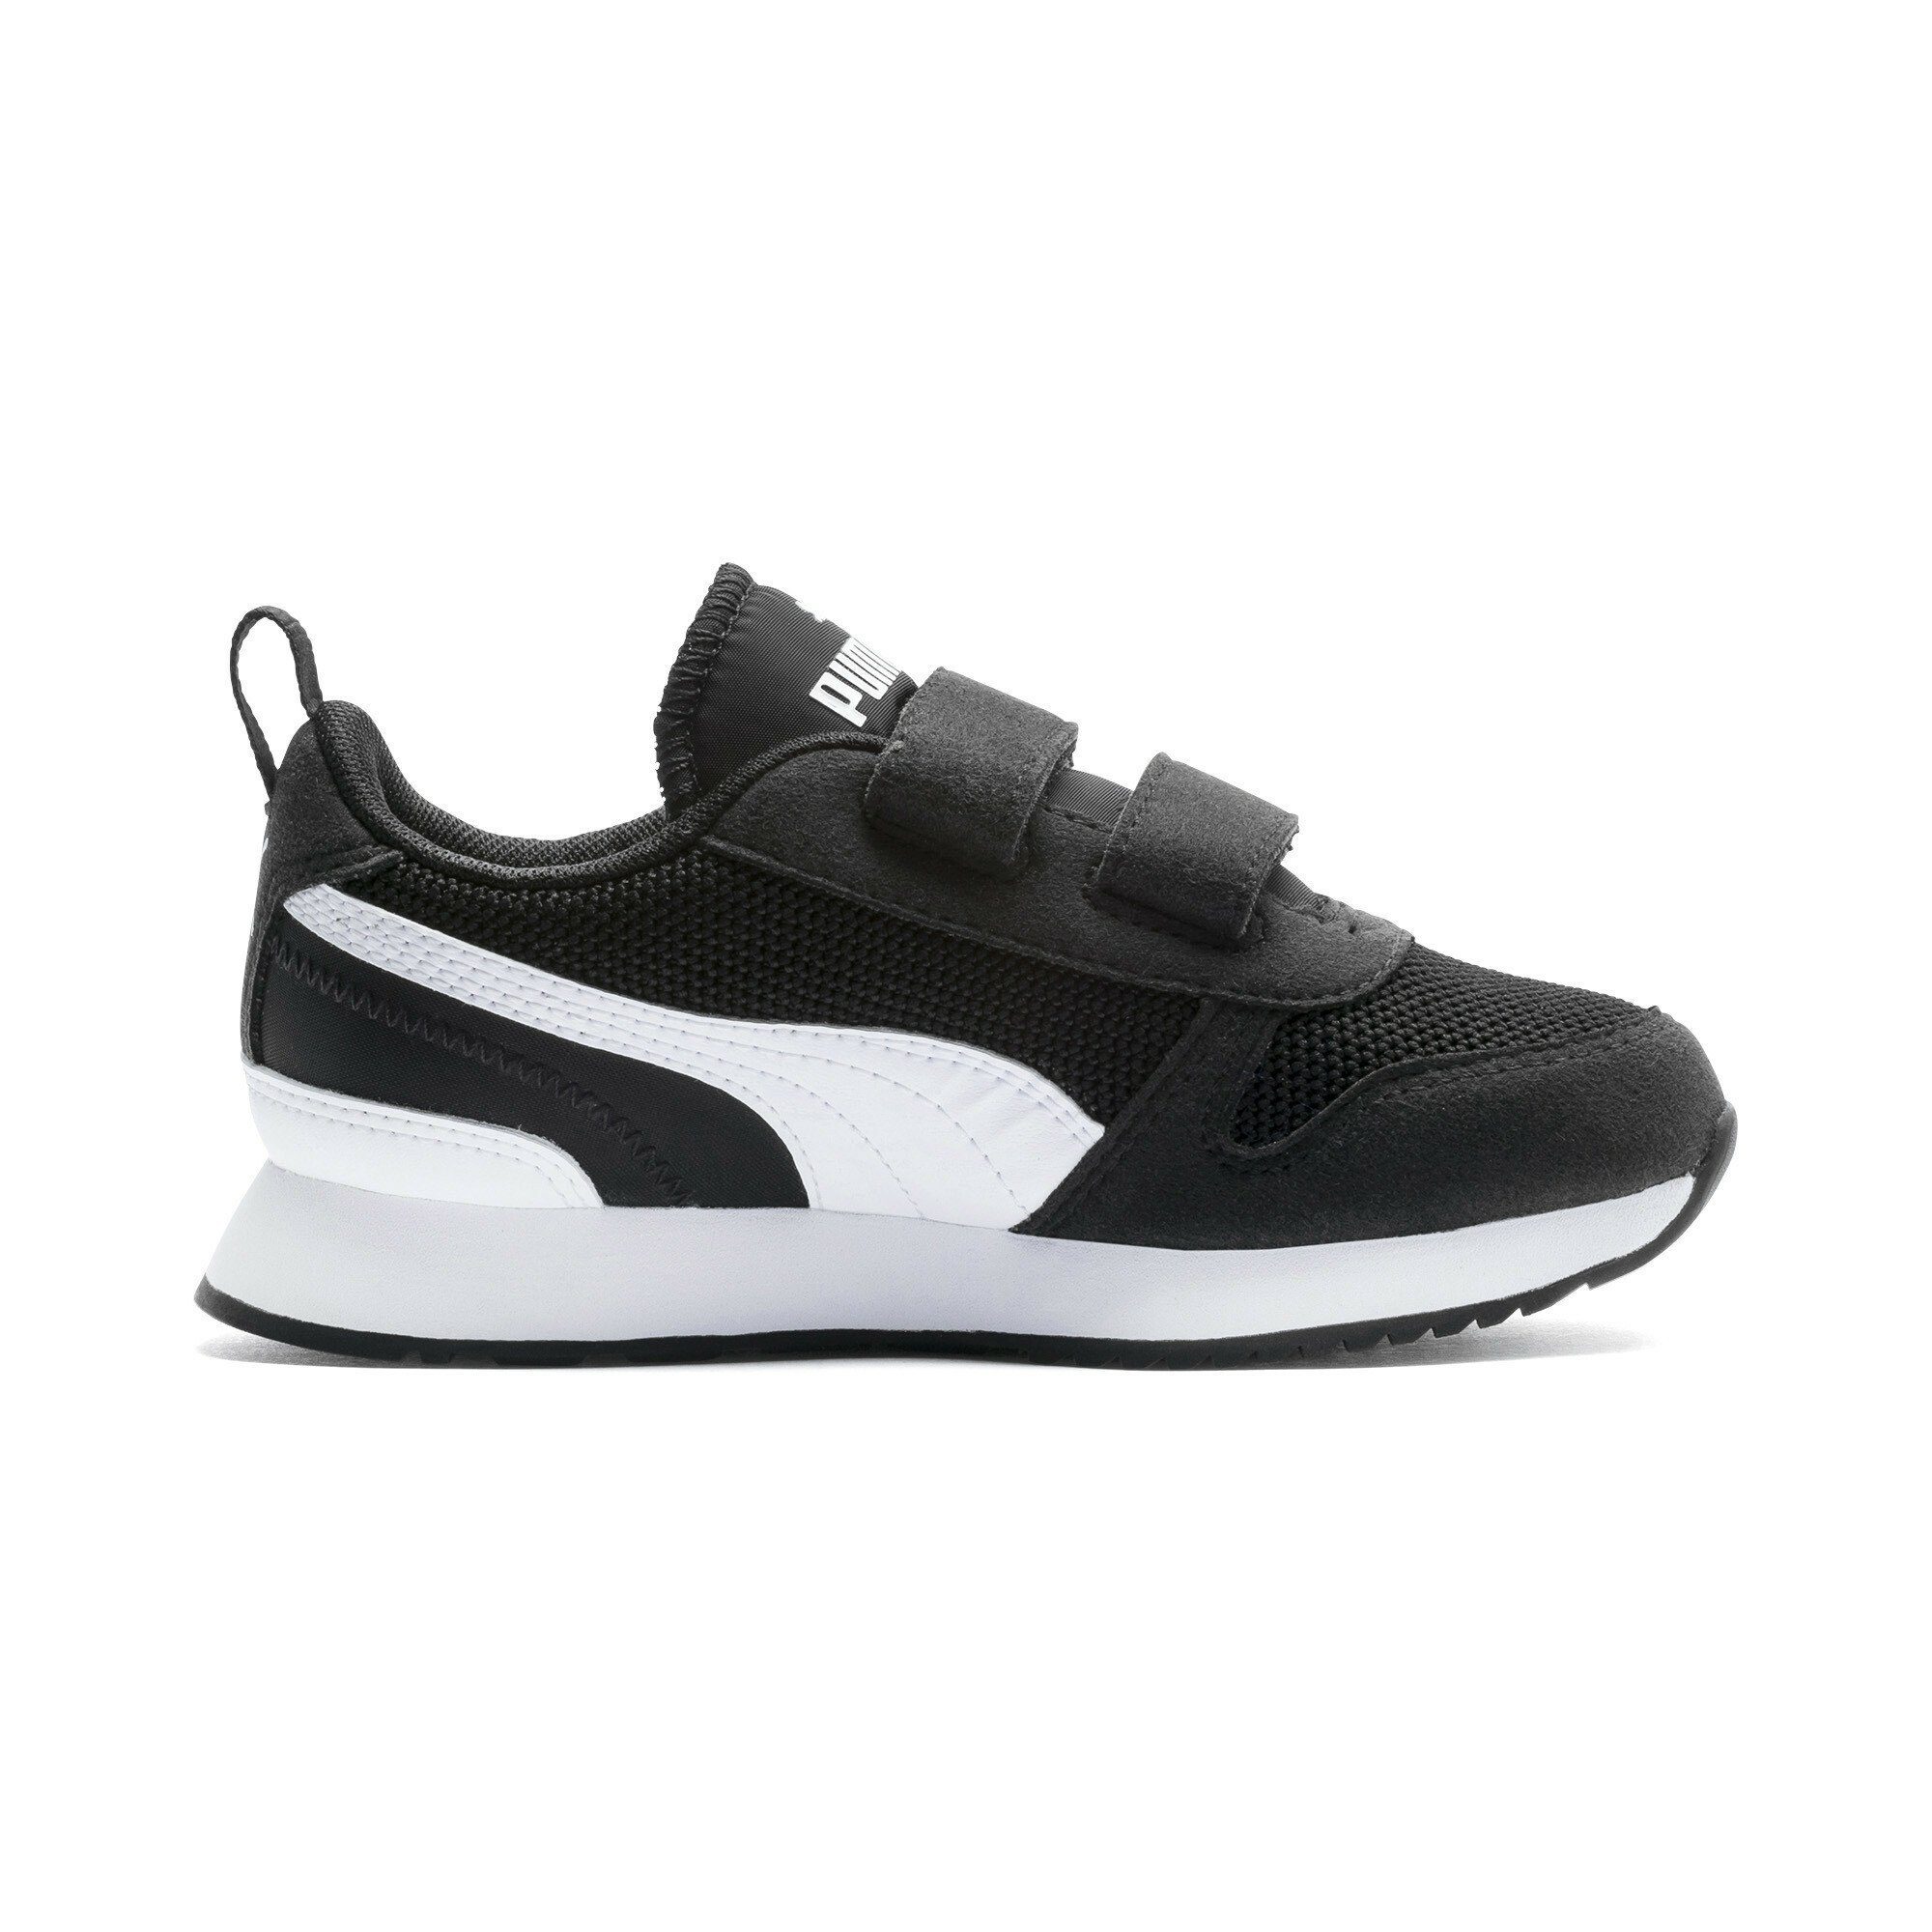 PUMA White Black Laufschuh Jugendliche Sneaker R78